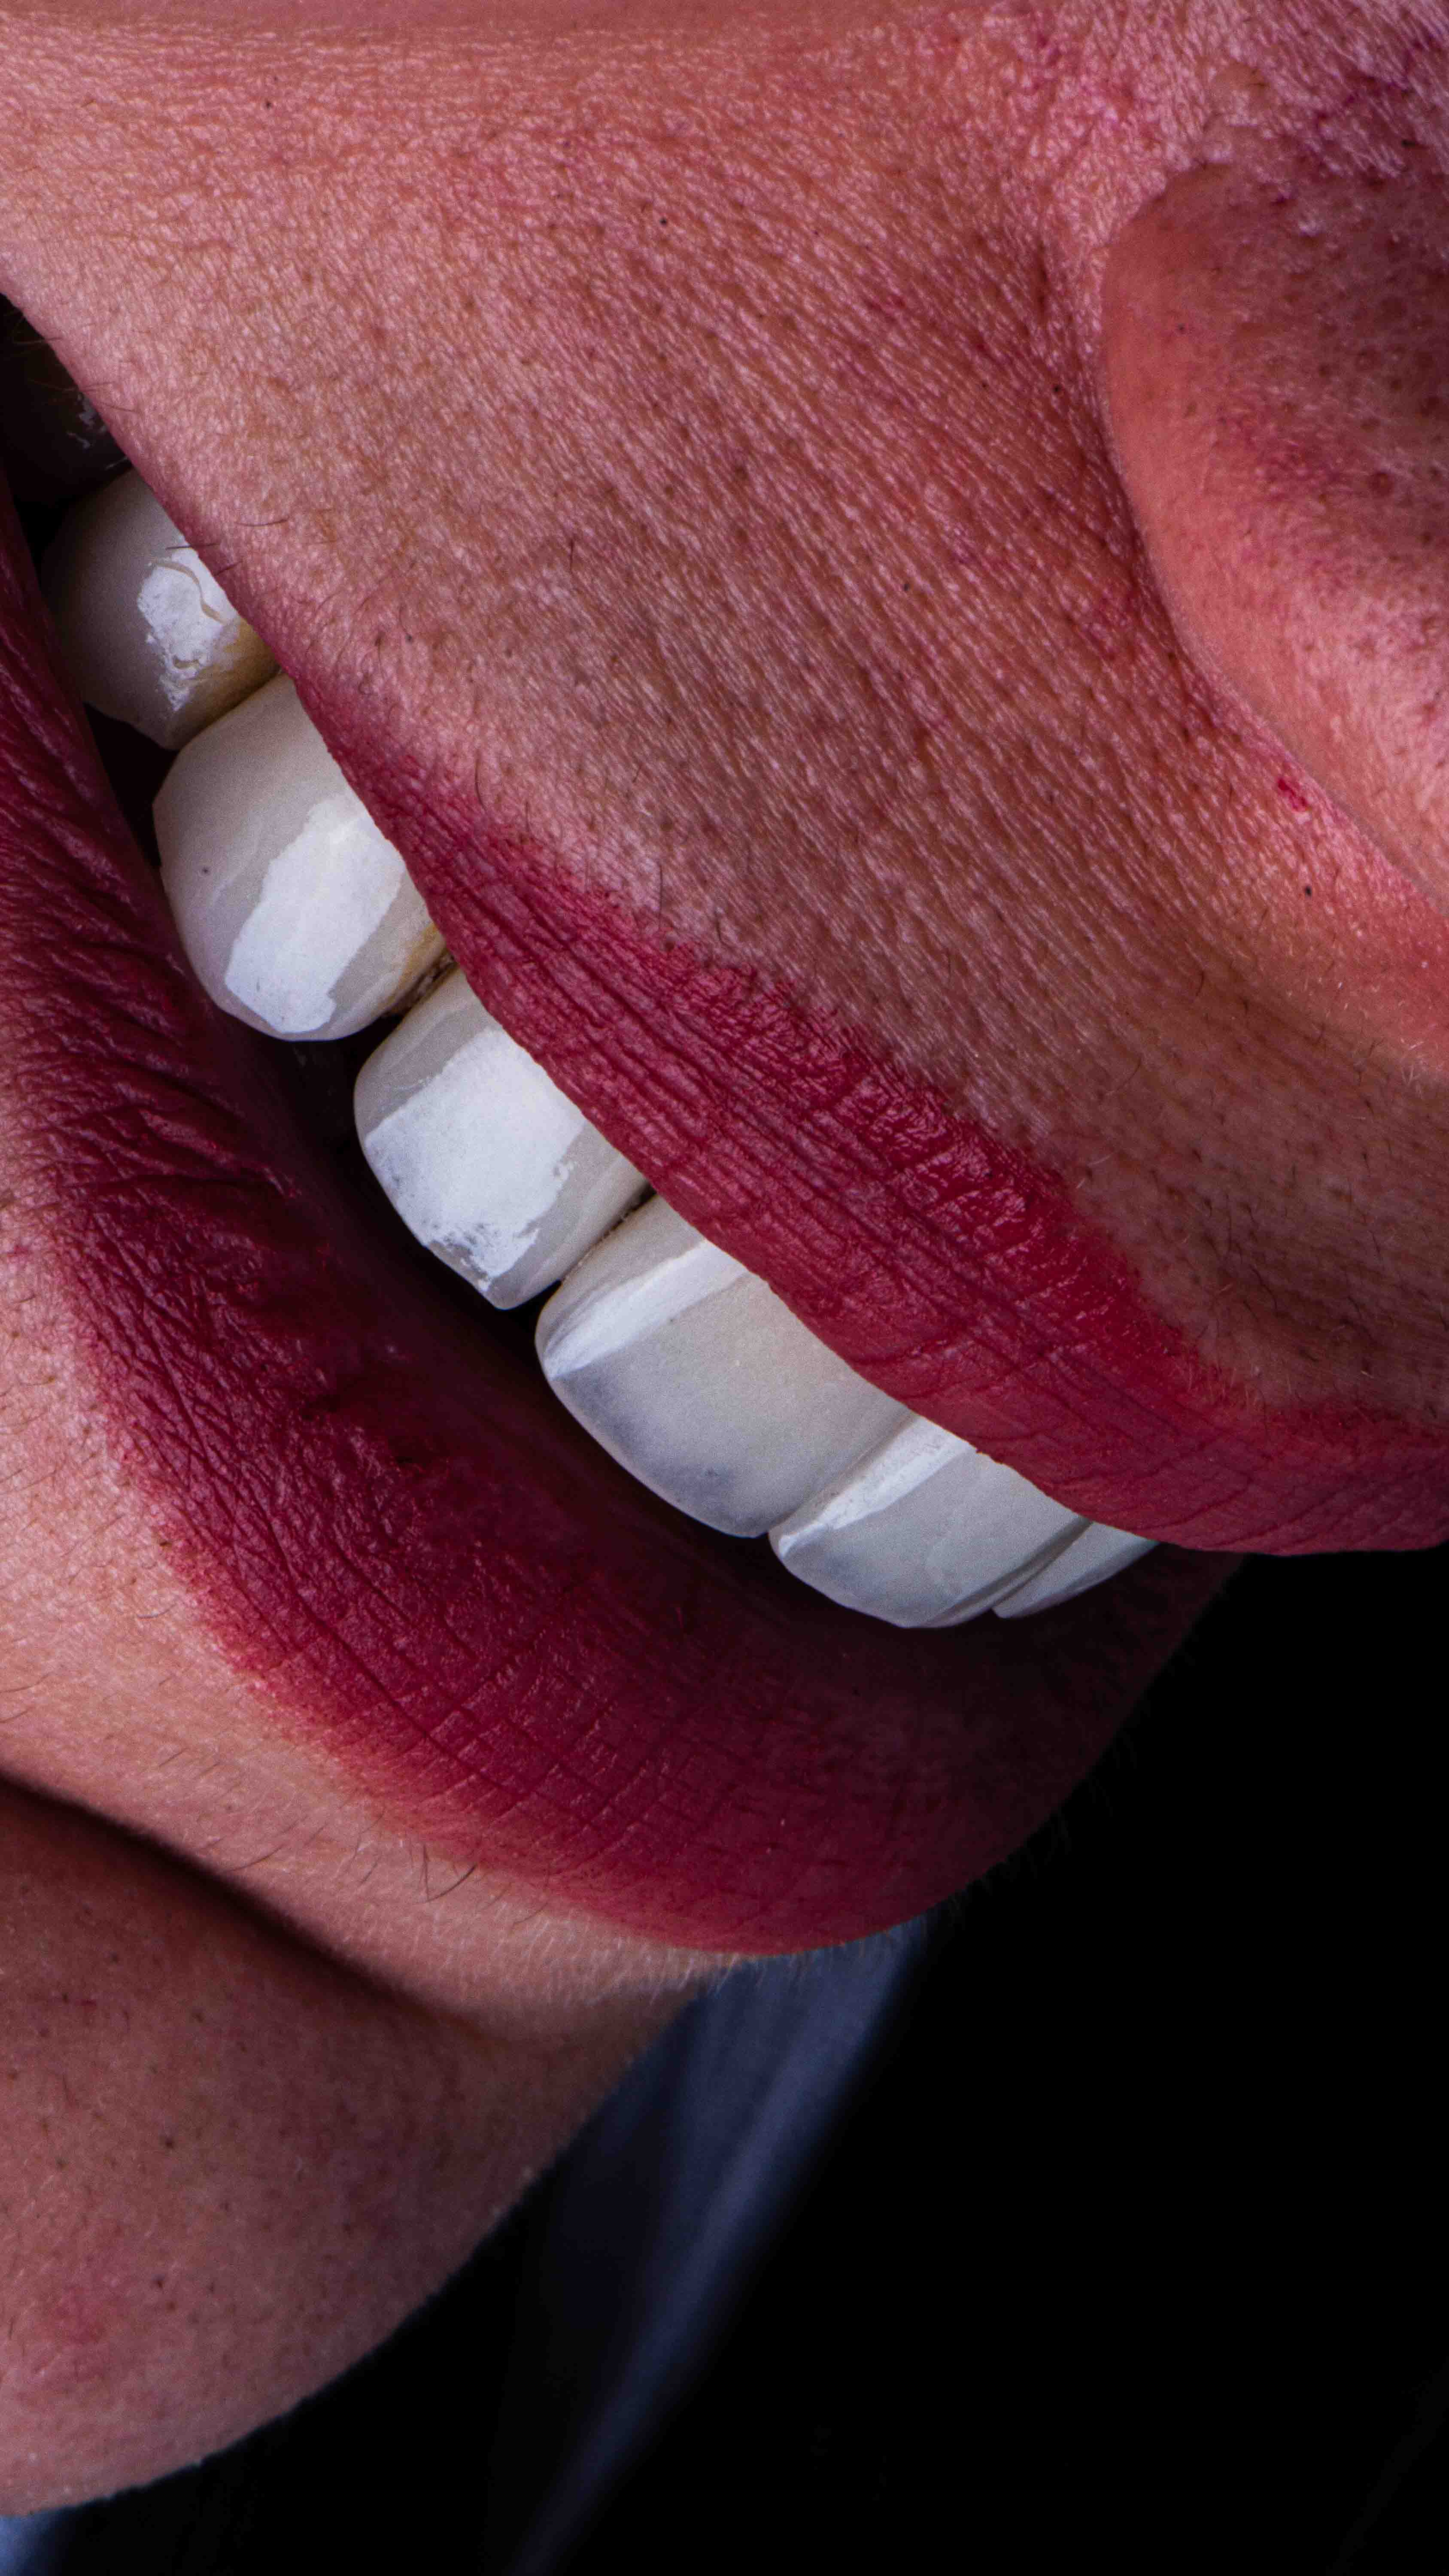 لمینیت دندان کلینیک دندان پزشکی دریای نور.jpg